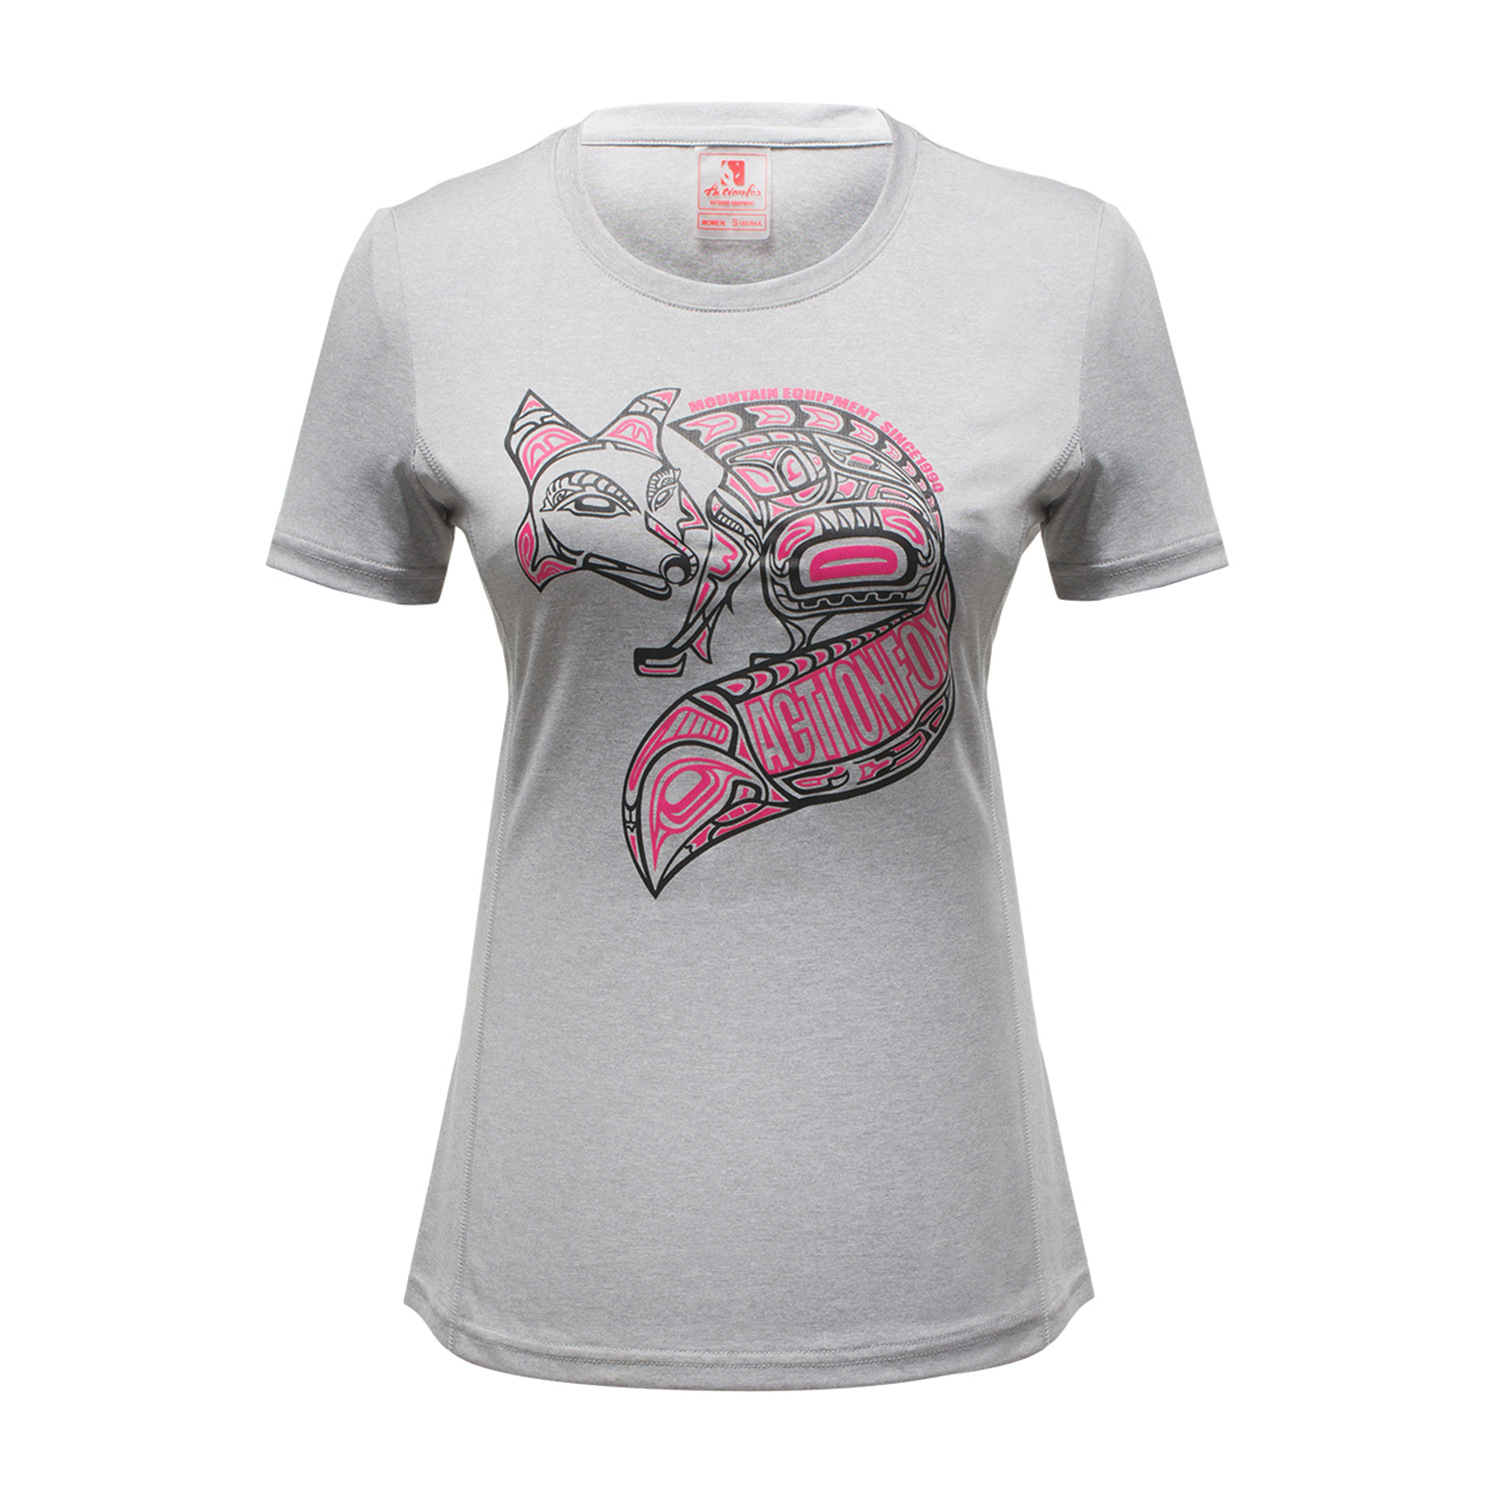 T-shirt sport pour femme ACTIONFOX à manche courte - Ref 2027498 Image 4